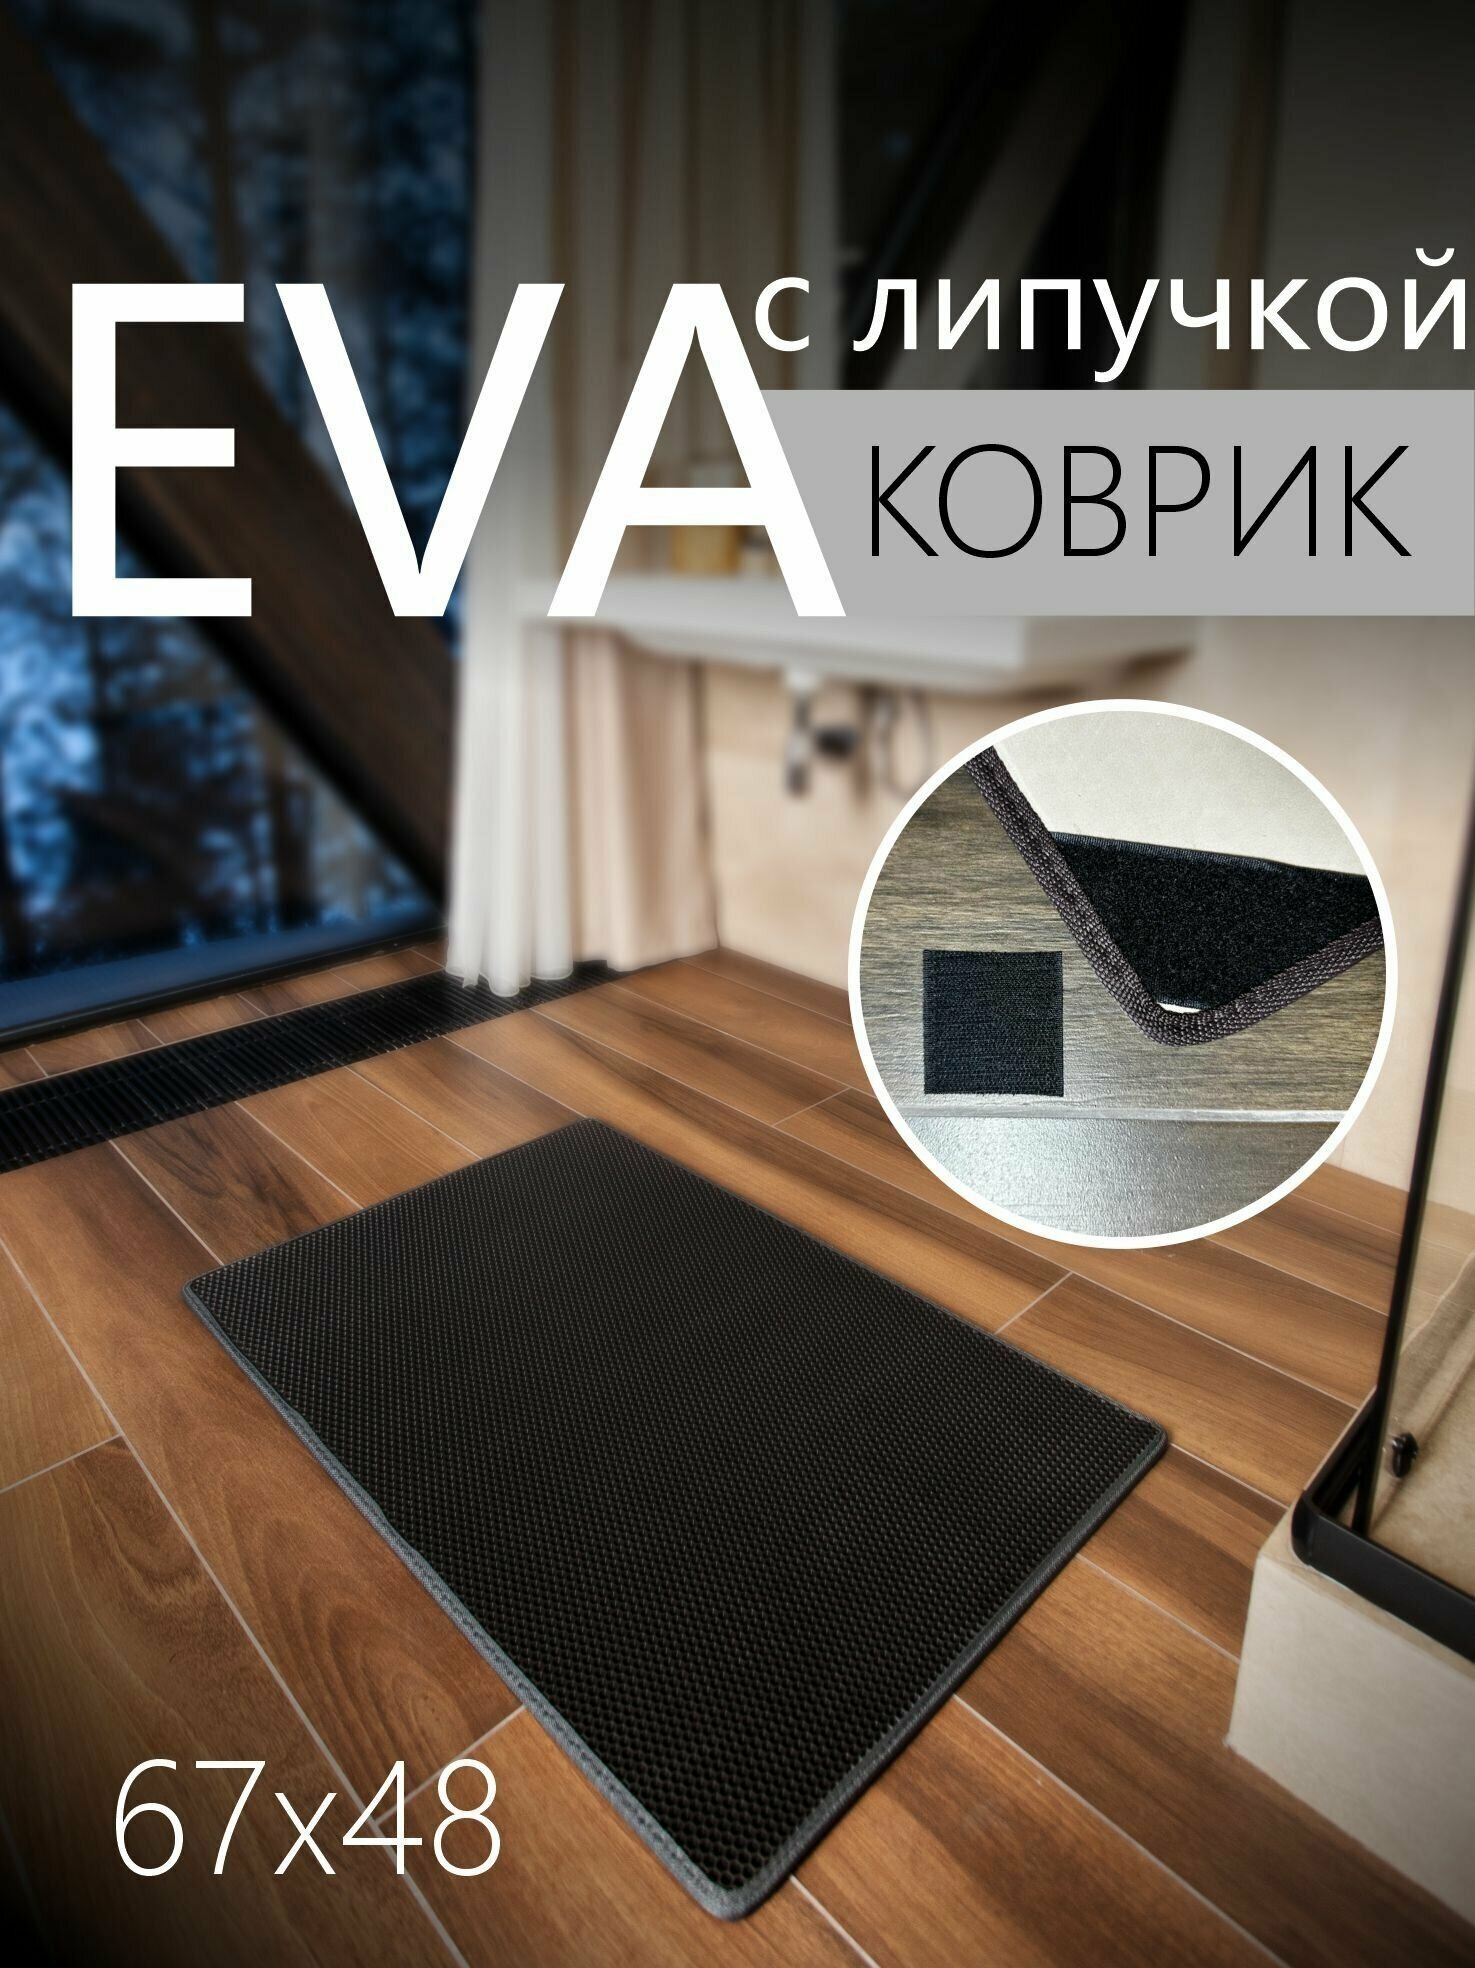 Коврик придверный противоскользящий EVA ЭВА универсальный 67х48 сантиметров. Липучки для фиксации. Соты Черный с серой окантовкой